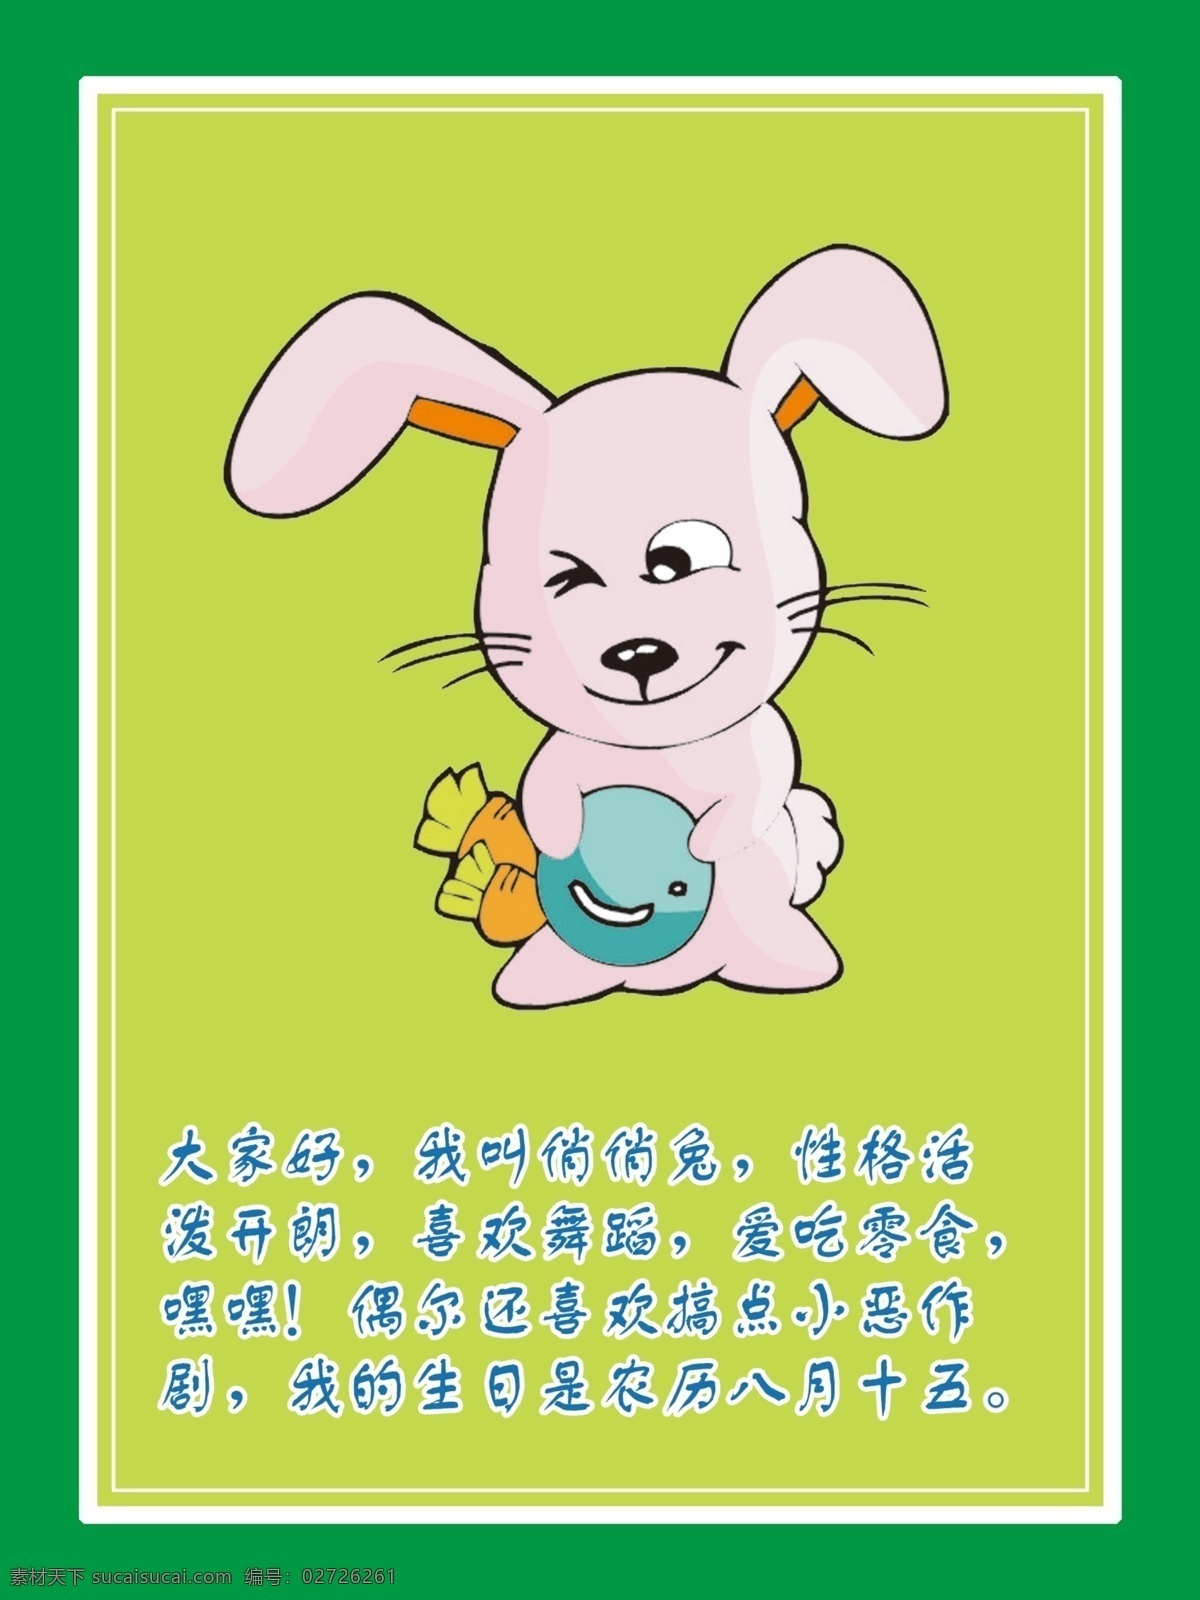 分层 背景 儿童 教育 卡通 识字 兔子 幼儿园 兔子素材下载 兔子模板下载 俏俏兔 益道 阅读 源文件 psd源文件